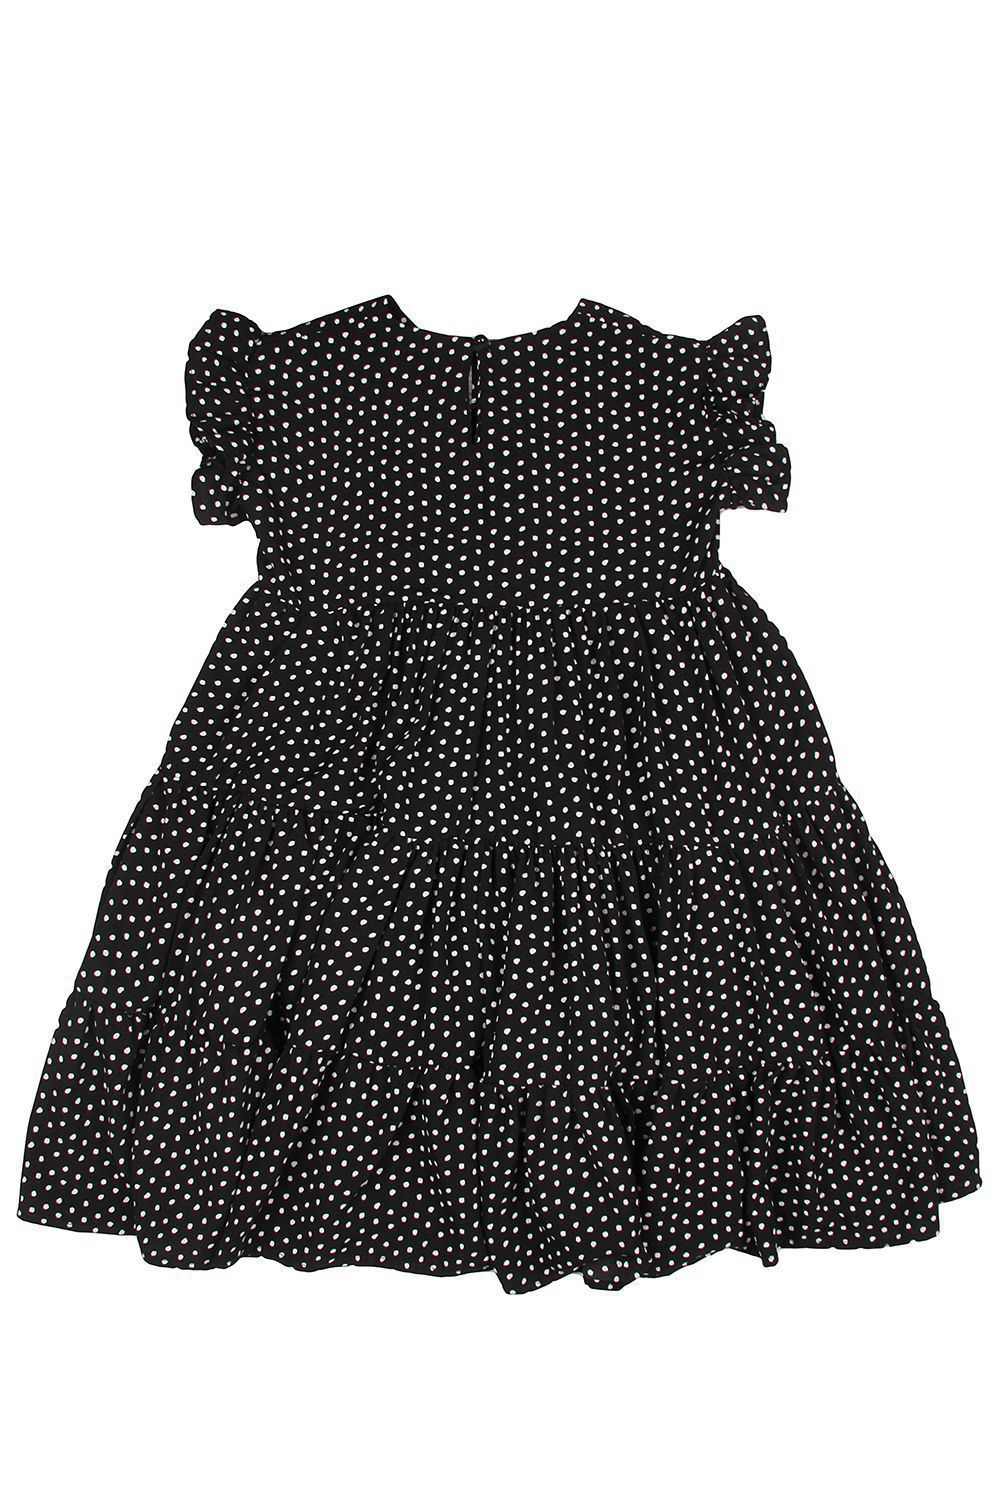 Платье Manila Grace, размер 168, цвет черный MG99 - фото 3